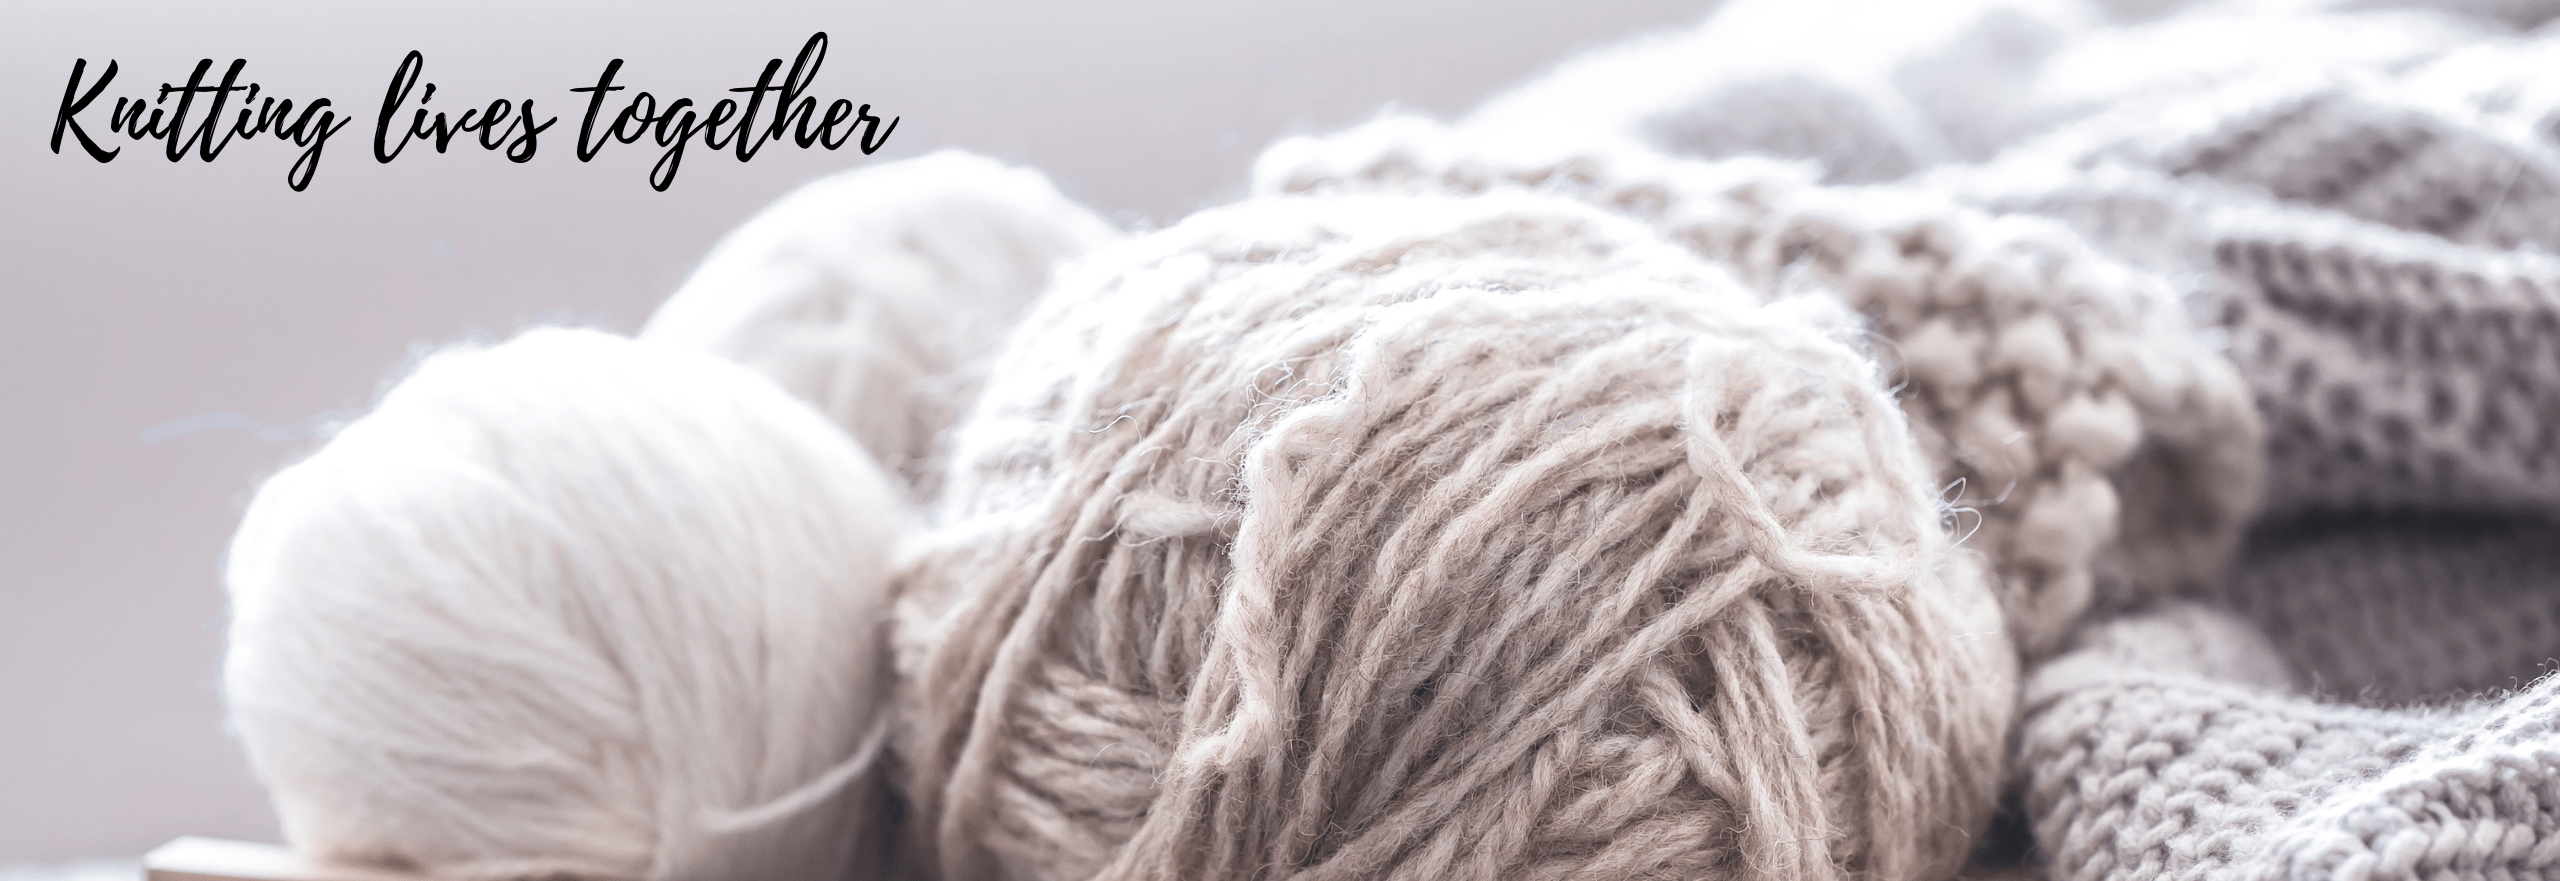 Knitting Lives Together blog page header